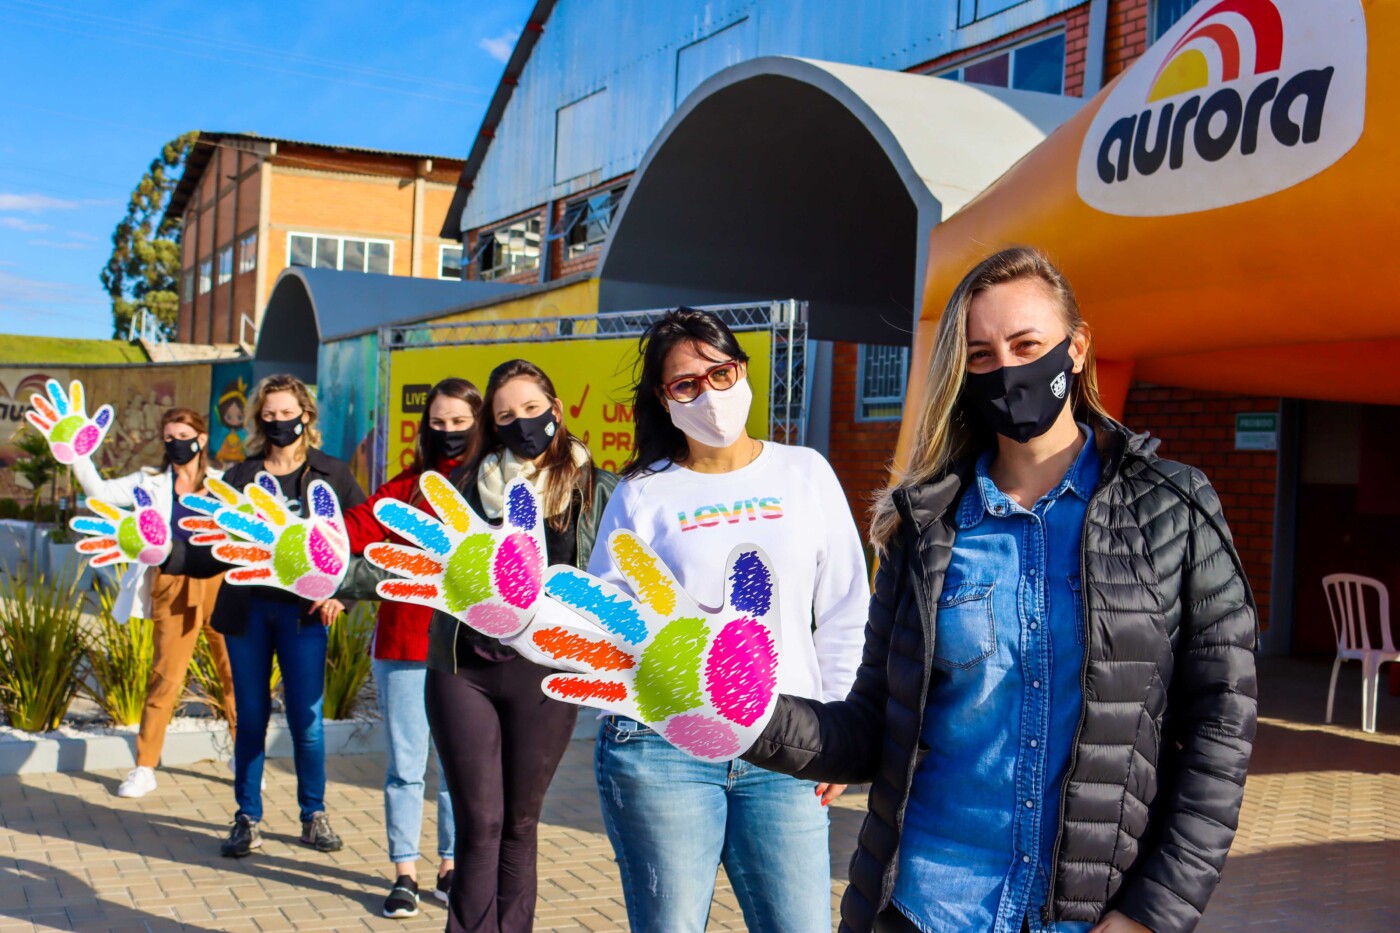 Aurora Coop celebra Dia C com ações em diversas cidades do País – SinoxTec  Distribuidora de Válvulas e Conexões Industriais